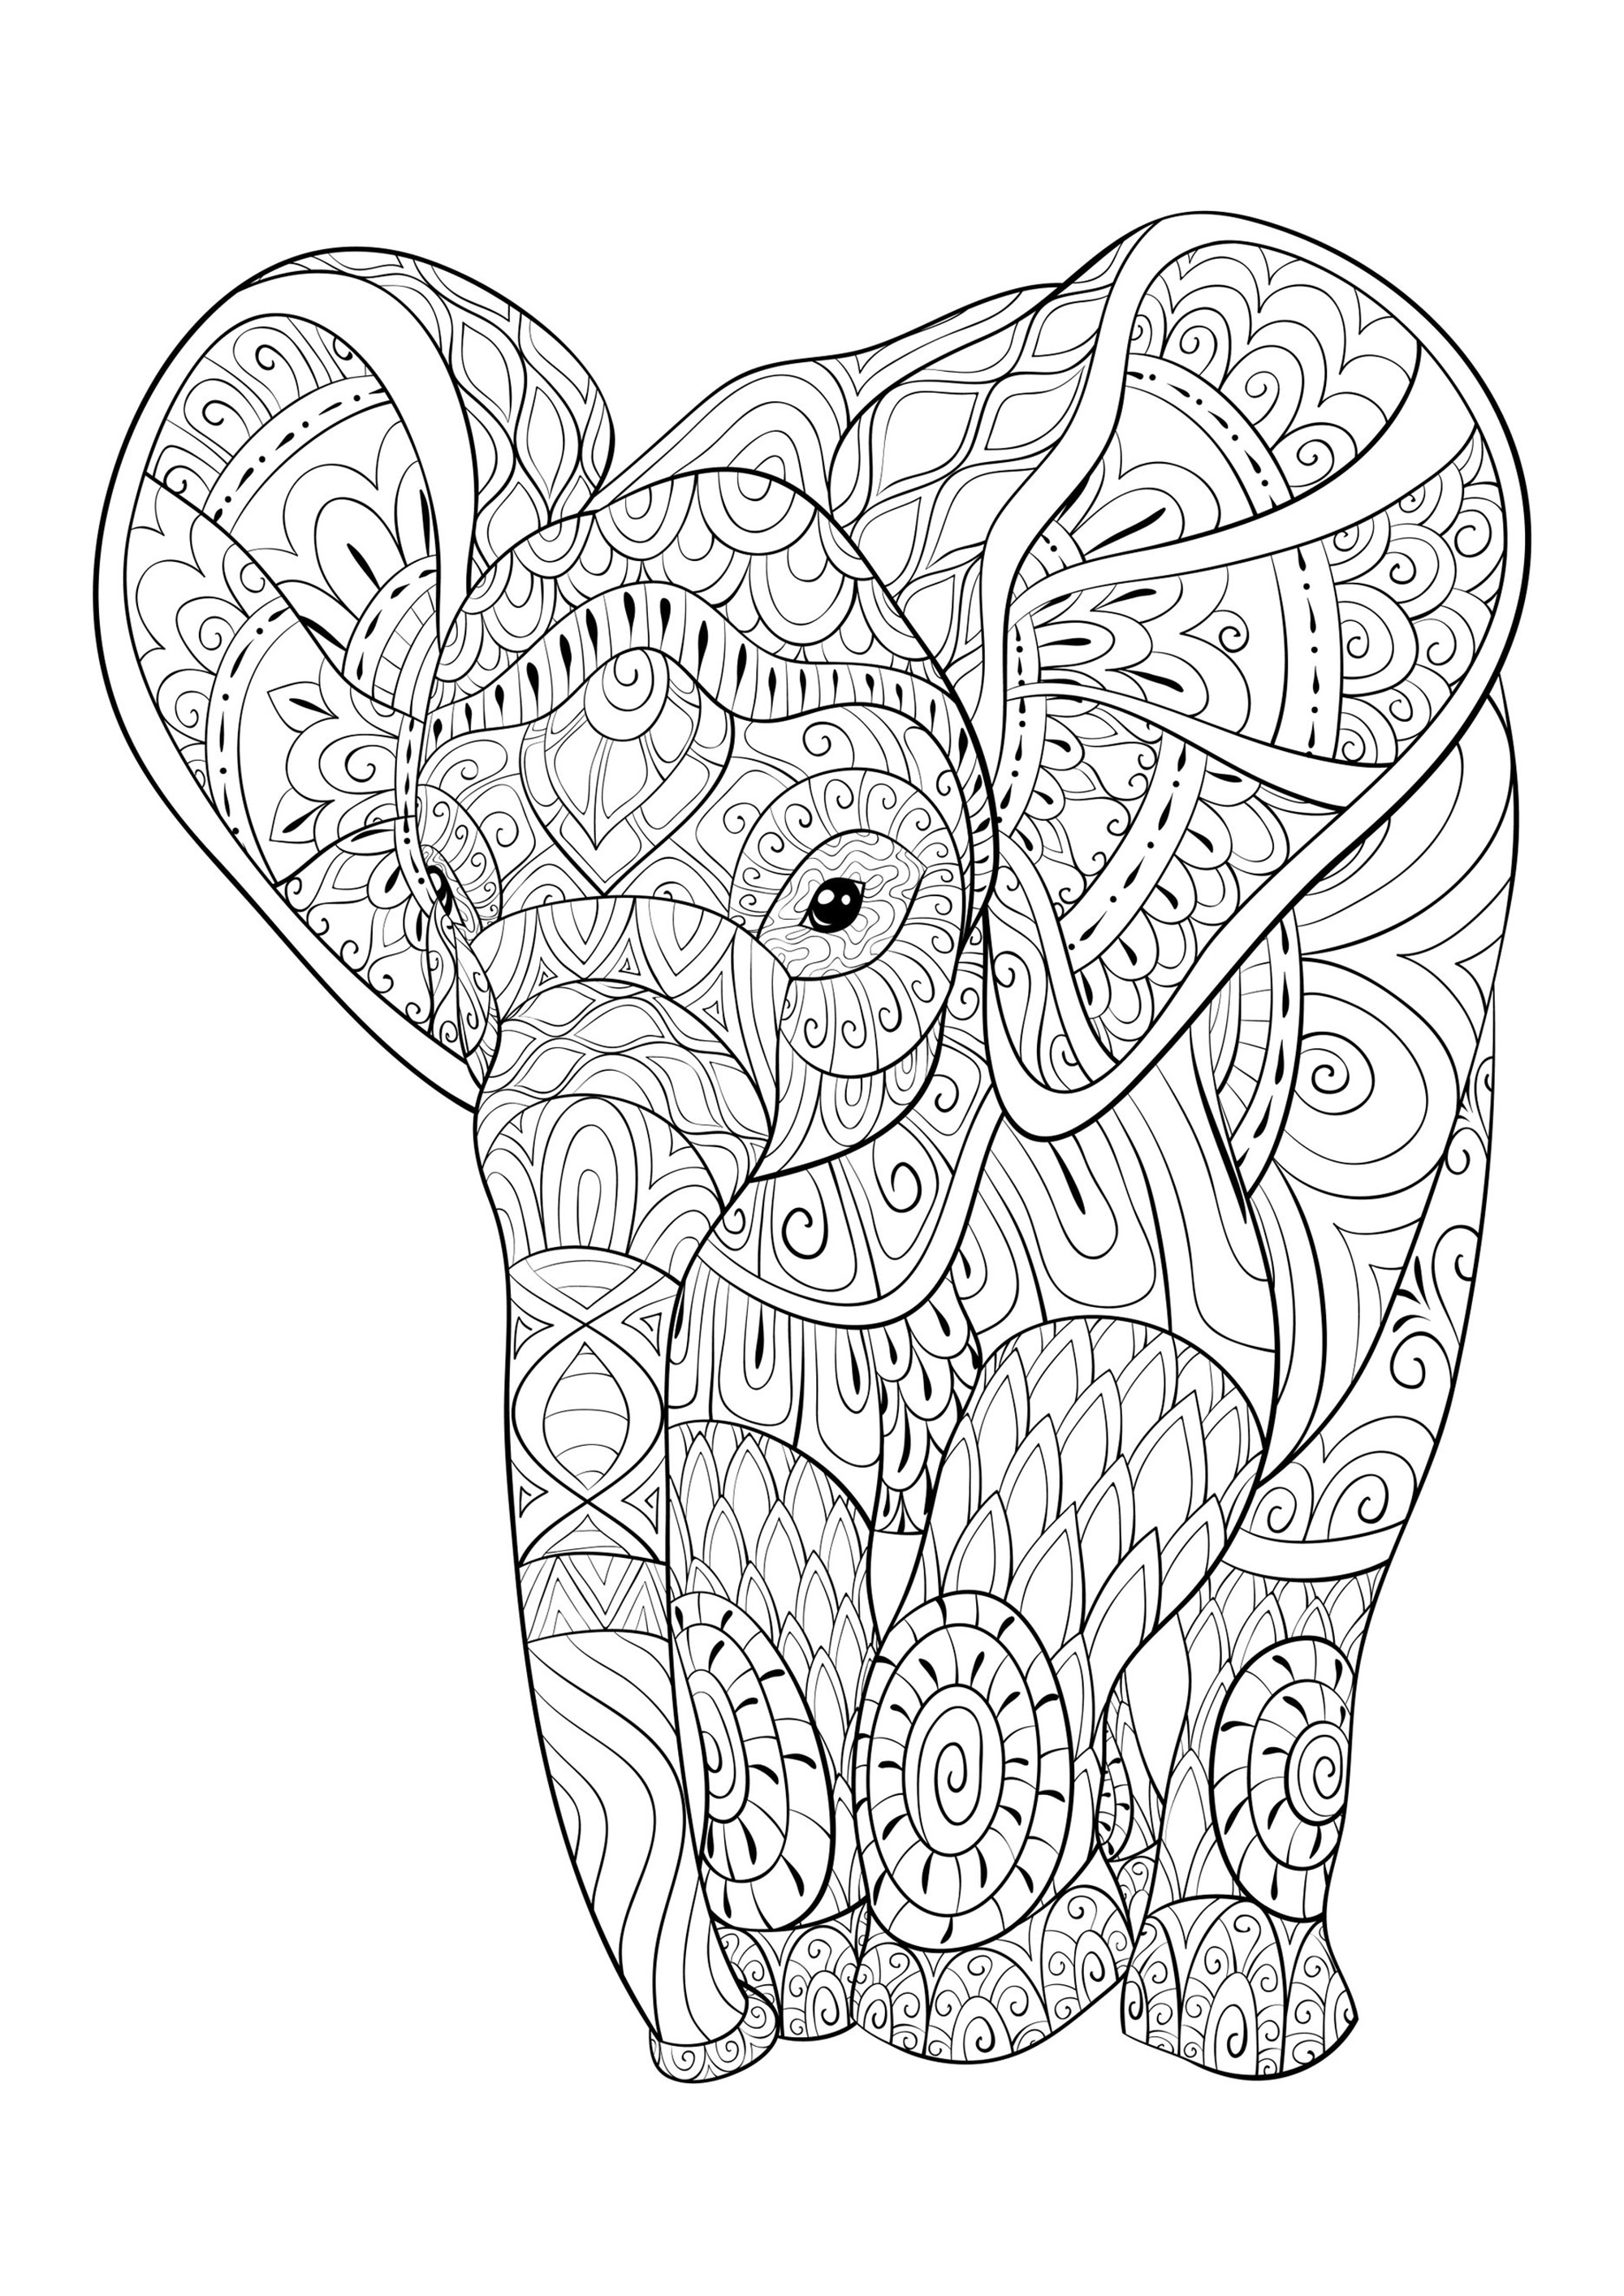 Giovane elefante pieno di bellissimi disegni da colorare, Artista : Nonuzza   Fonte : 123rf